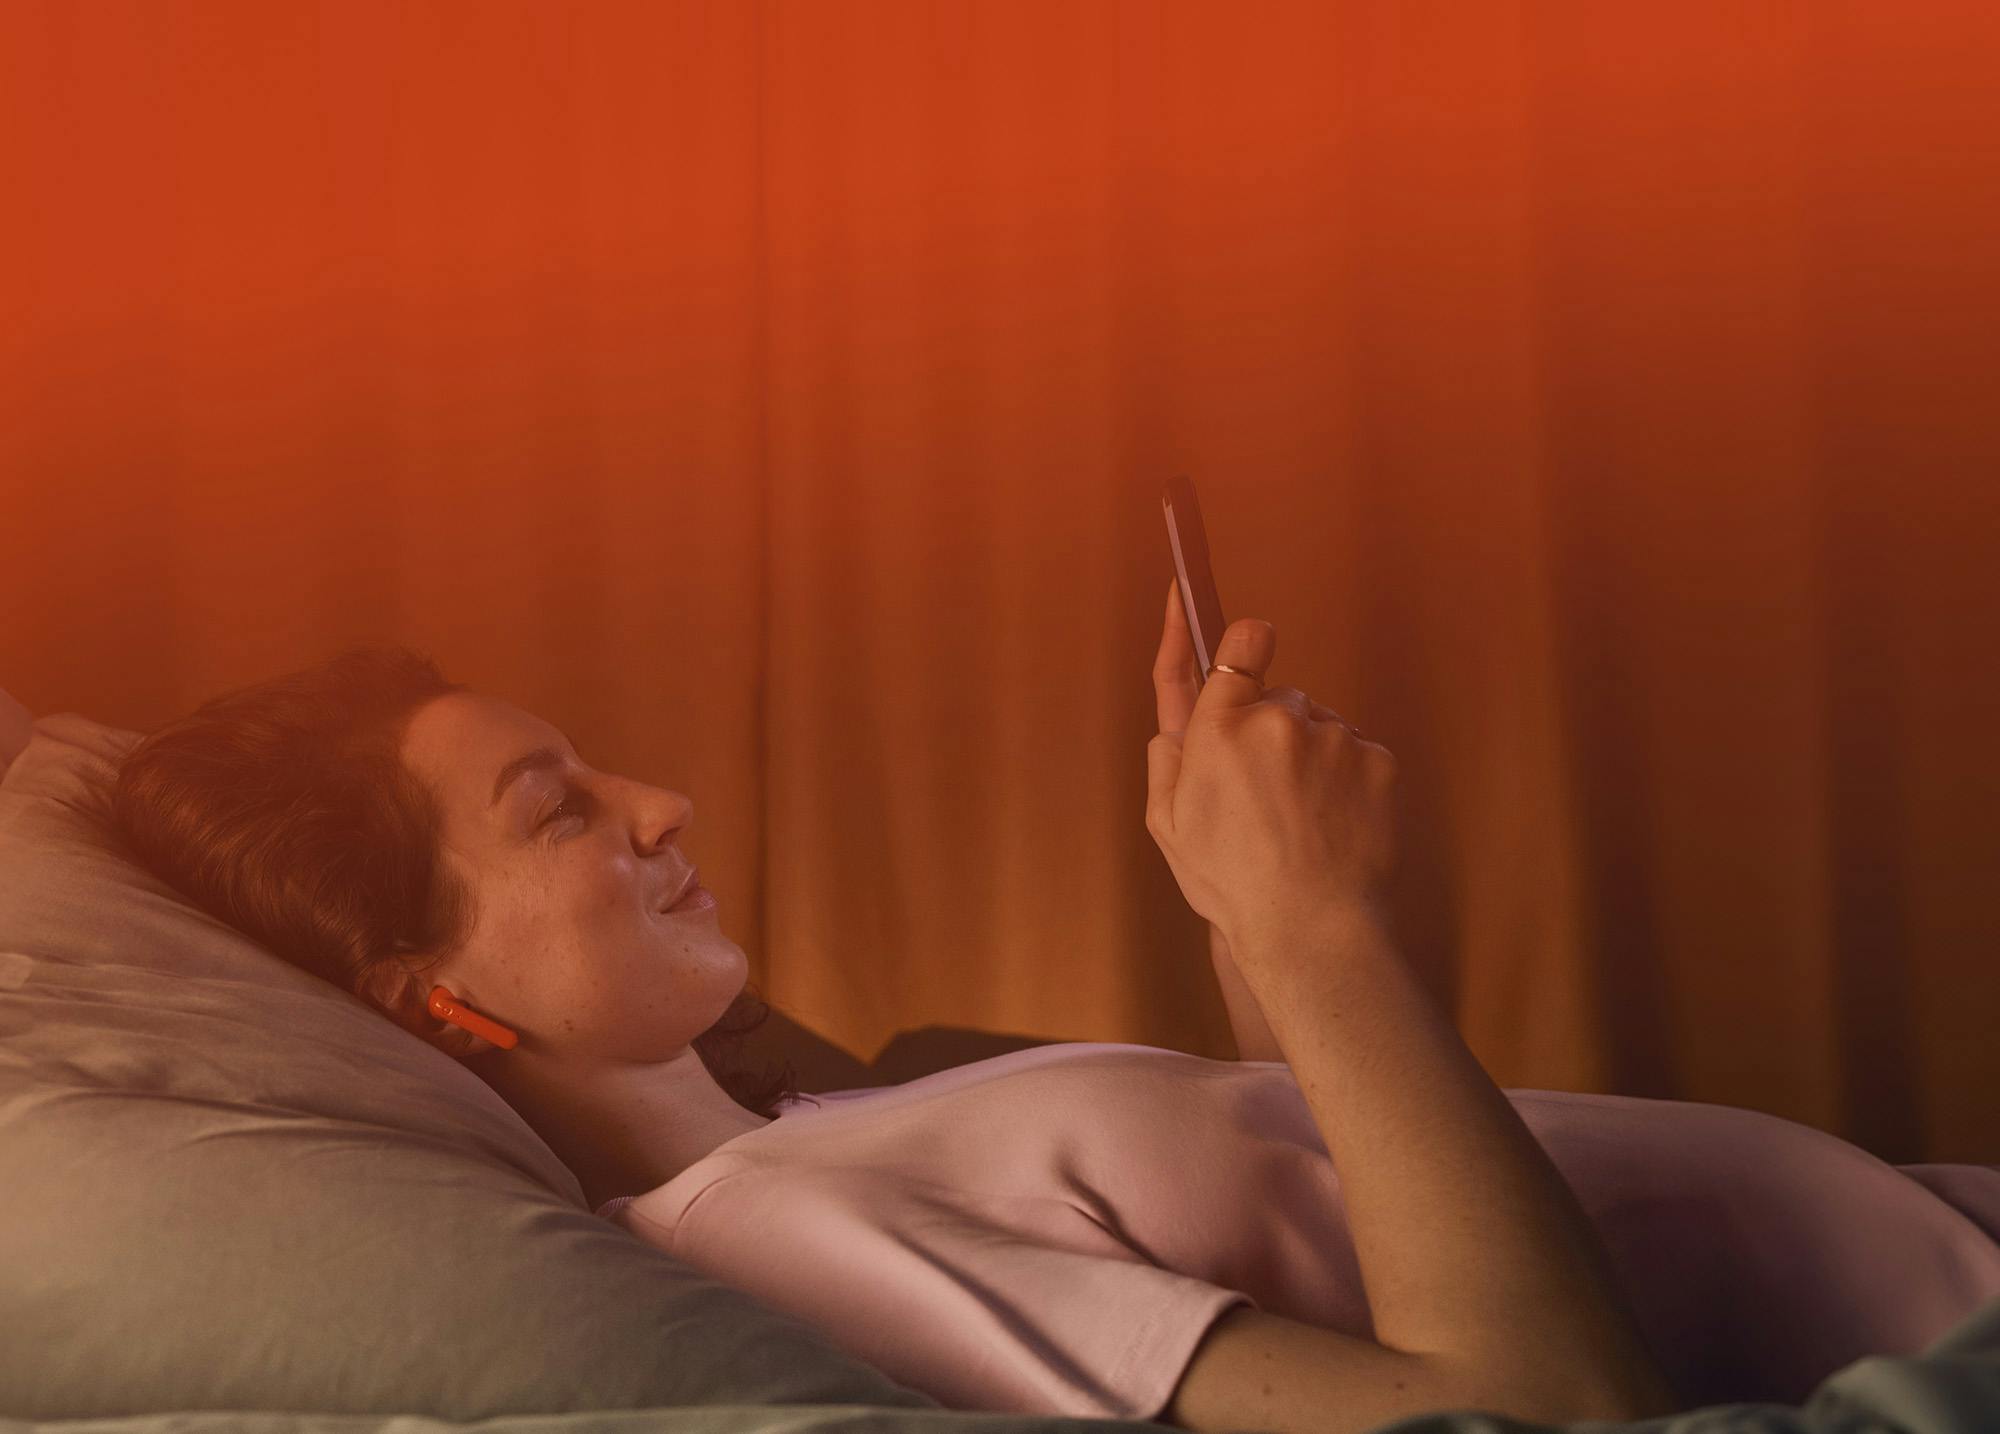 En kvinne ligger behagelig på ryggen i en seng med hodet på en pute. Hun smiler og ser på en smarttelefon hun holder i hånden. Kvinnen har oransje ørepropper, og rommet er opplyst i en varm oransje fargetone, noe som skaper en avslappet og koselig atmosfære. Den rolige scenen antyder at hun lytter til en lydbok eller nyter multimedia-innhold på sin enhet.